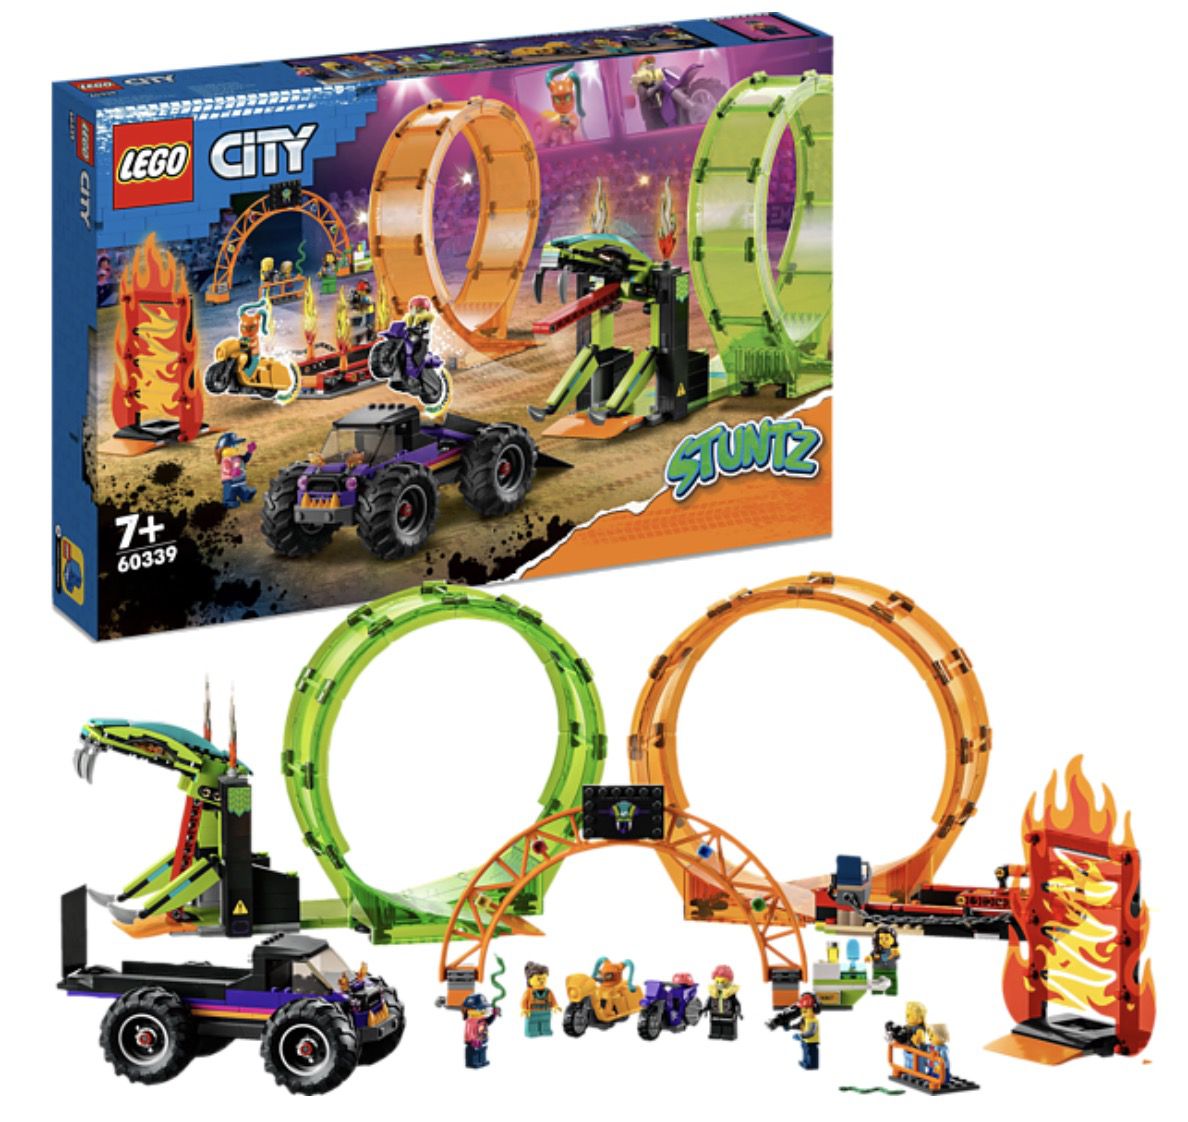 LEGO City Stuntz 60339 Stuntshow Doppellooping Bausatz für 80€ (statt 101€)